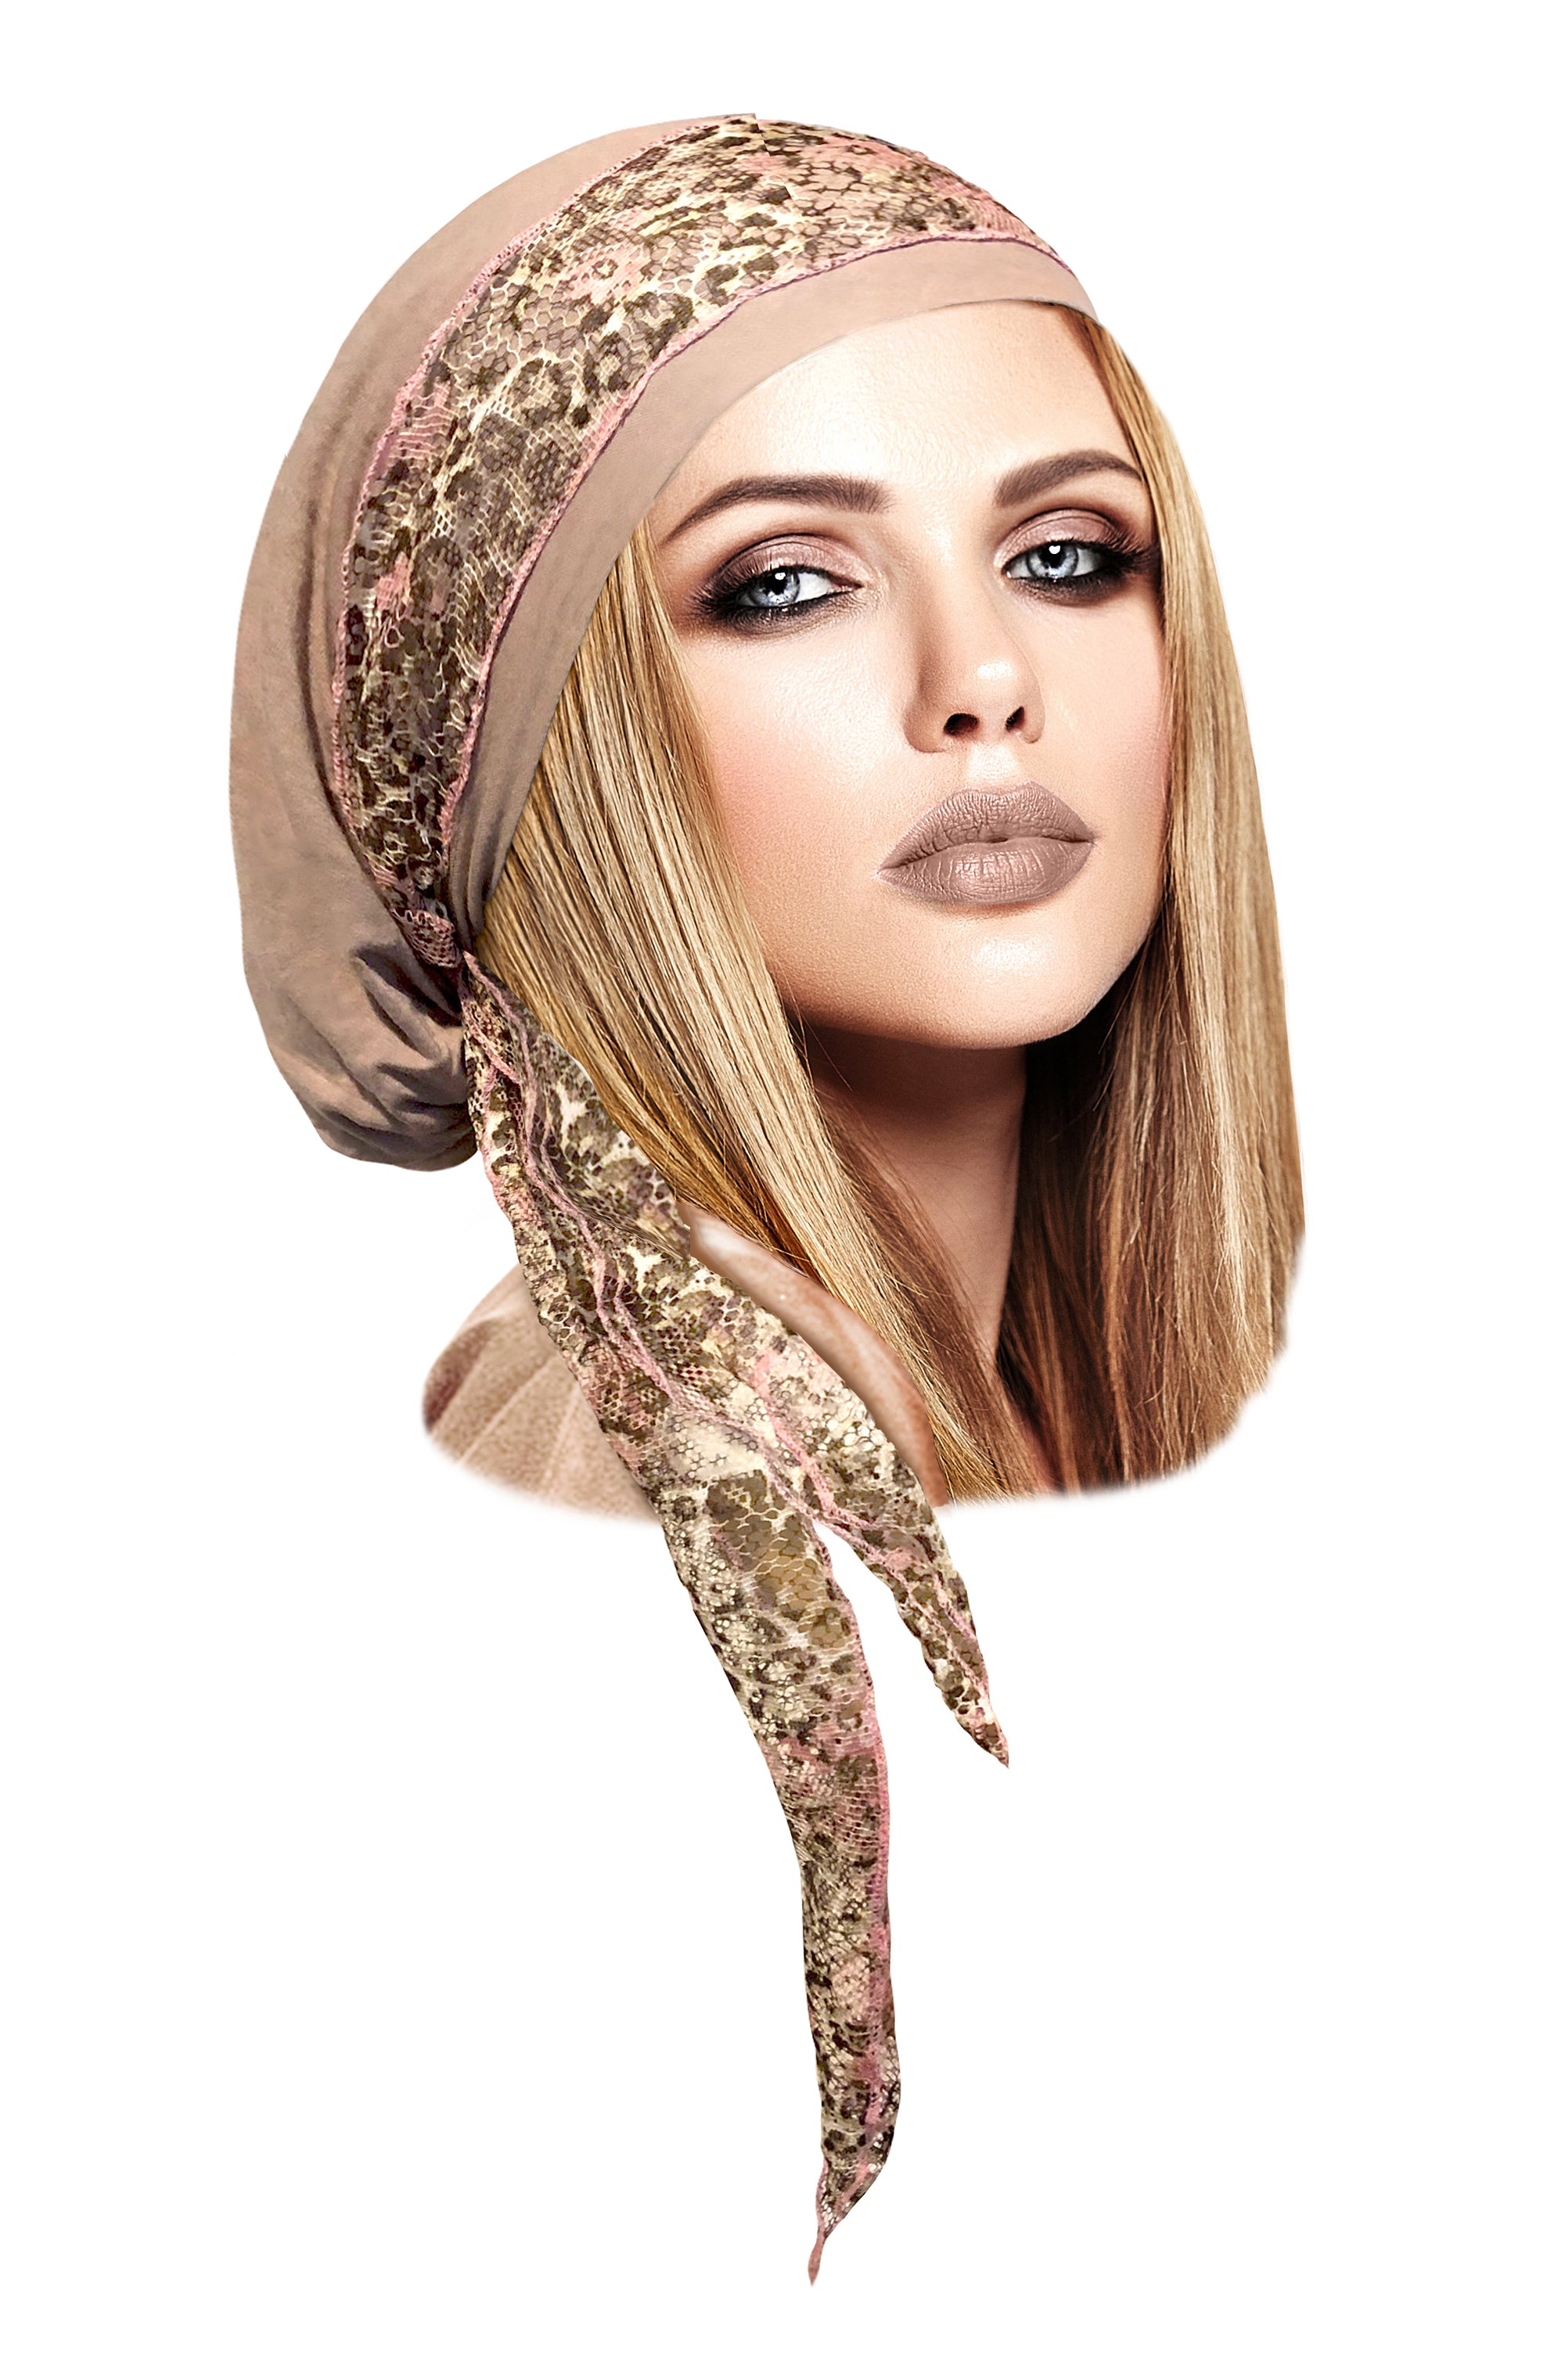 Beige headscarf w/pink floral lace wrap